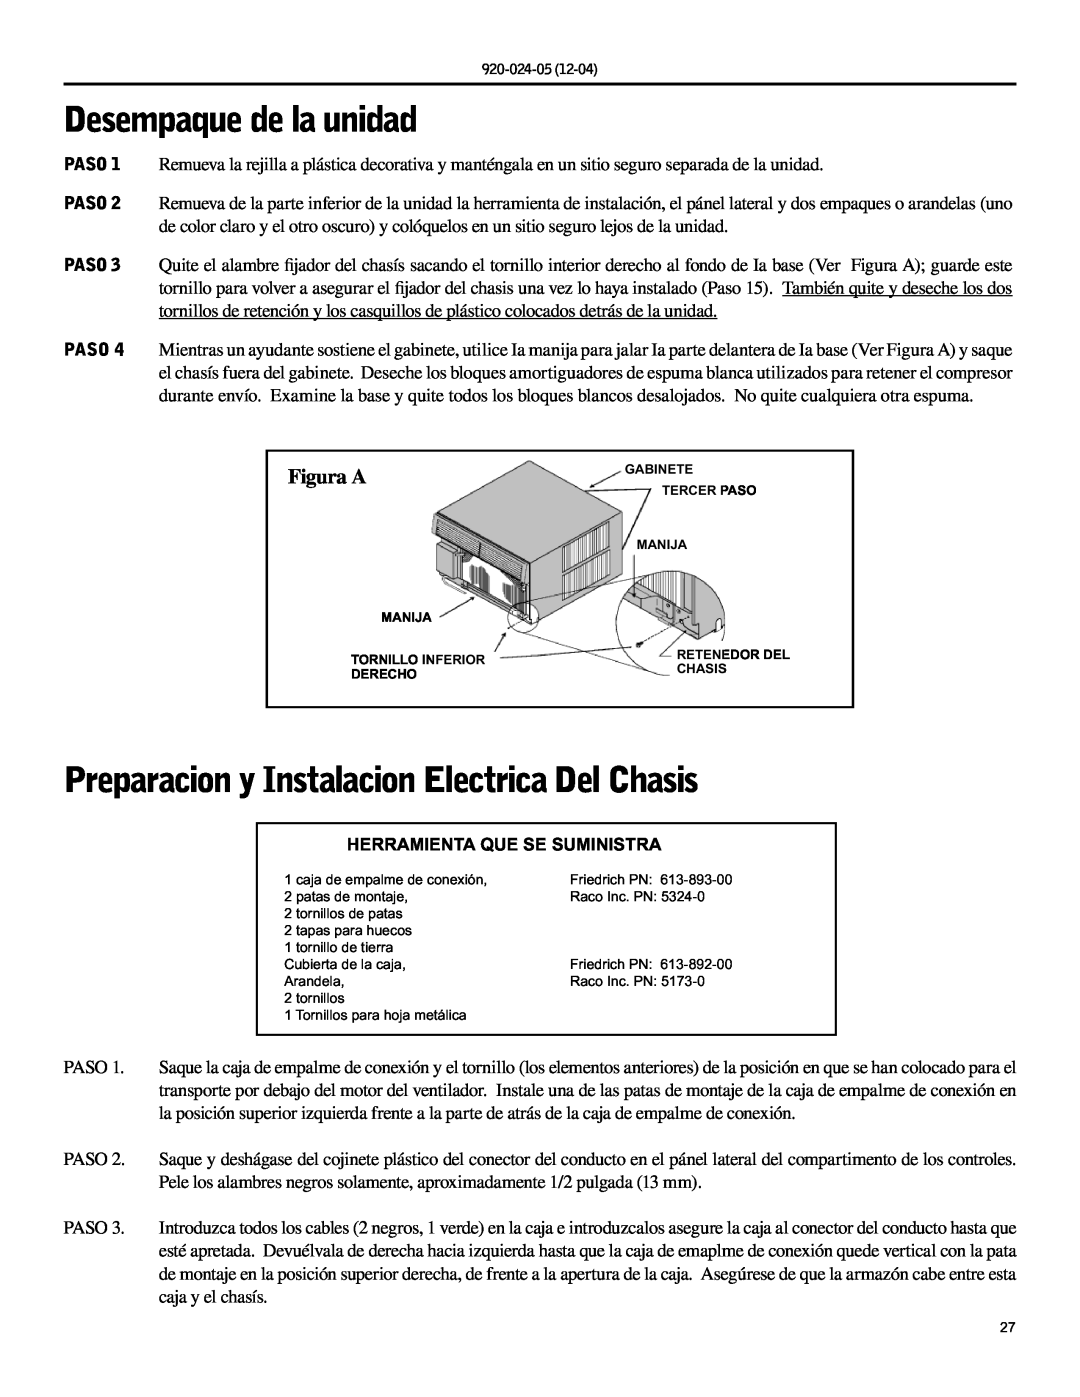 Friedrich SH20, SH15 operation manual Desempaque de la unidad, Preparacion y Instalacion Electrica Del Chasis, Figura A 